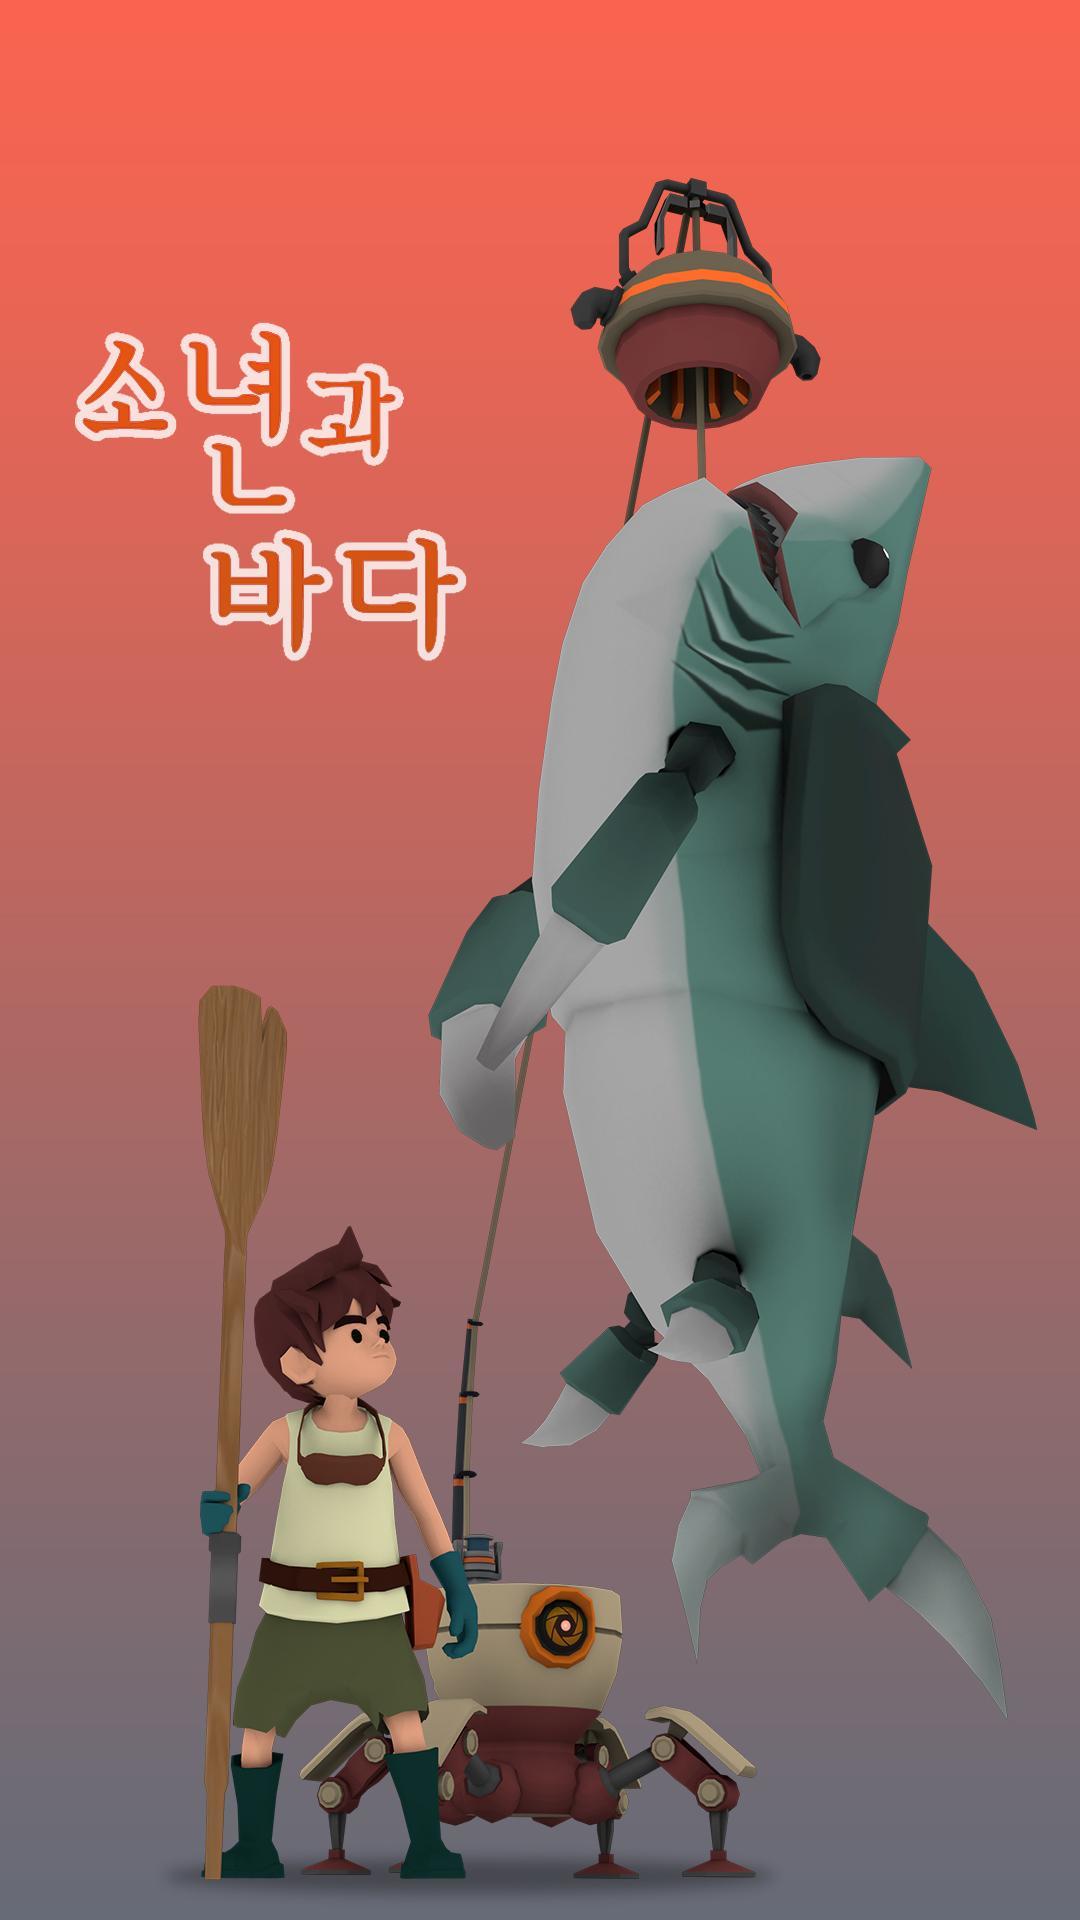 Screenshot 1 of Песчаная акула: Мальчик и море 1.47